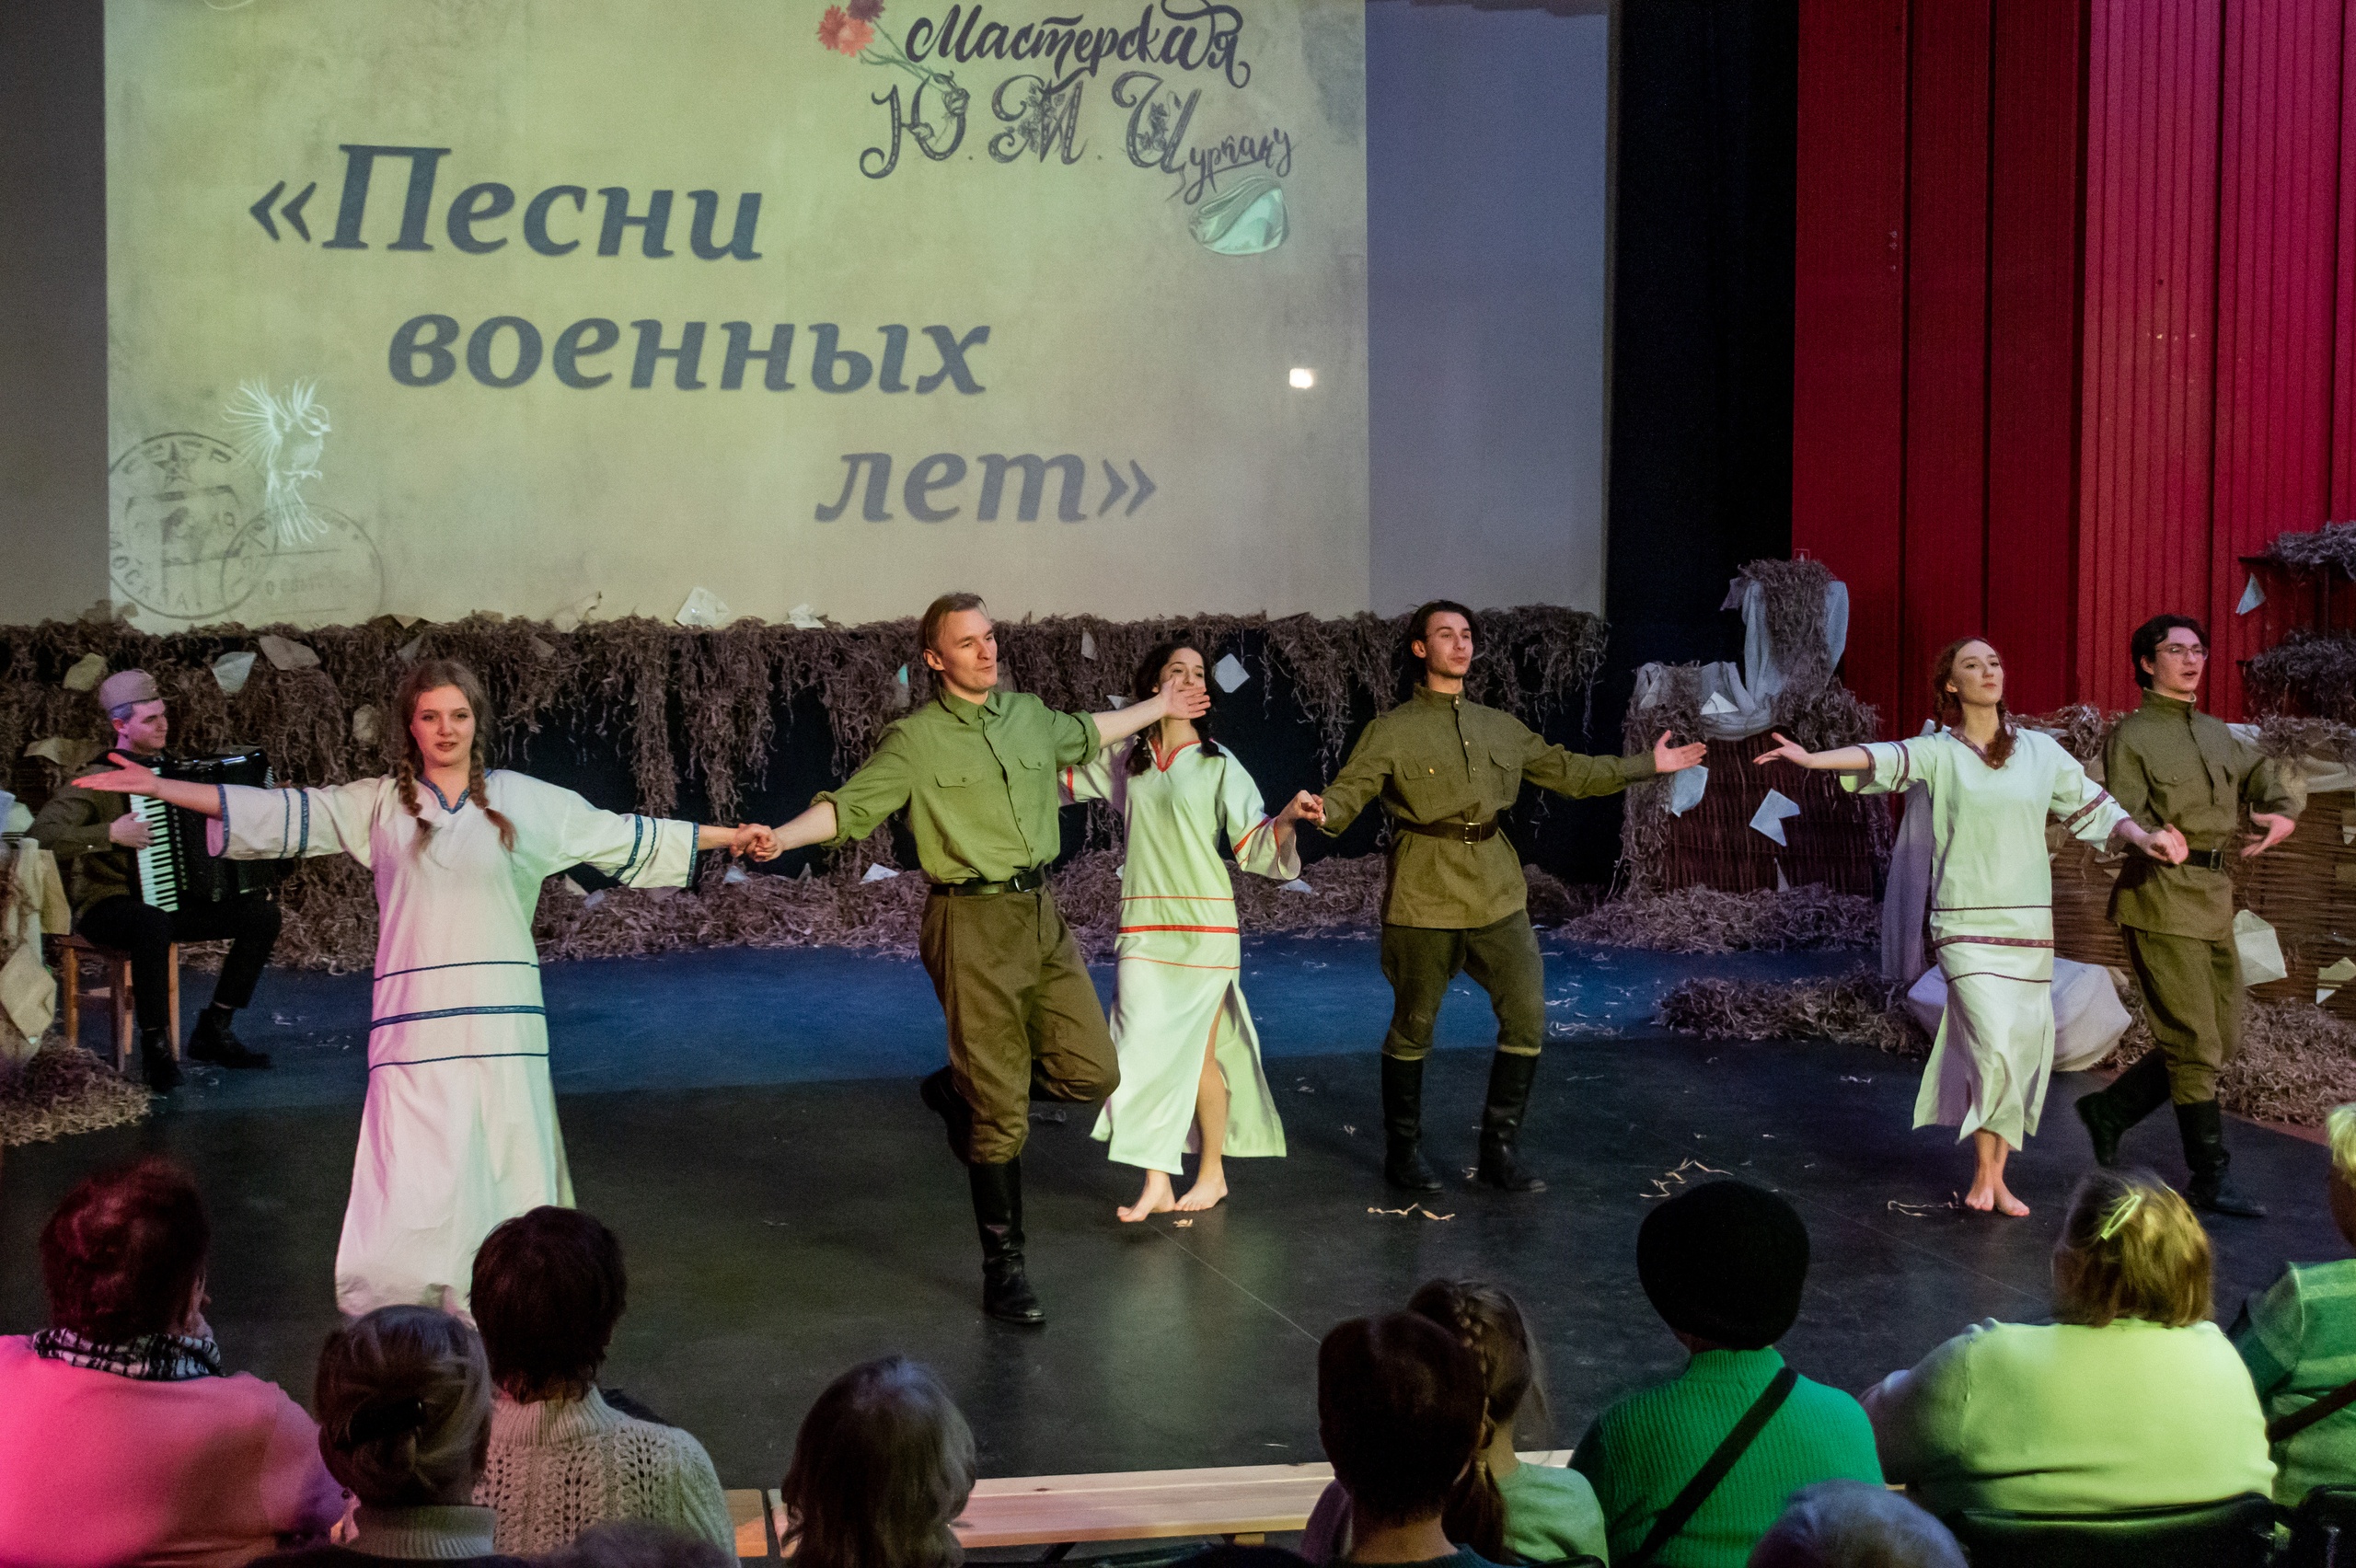 26 января, в пятницу, в 19:30 в малом зале КДЦ "Подвиг" состоялся концерт "Песни военных лет".